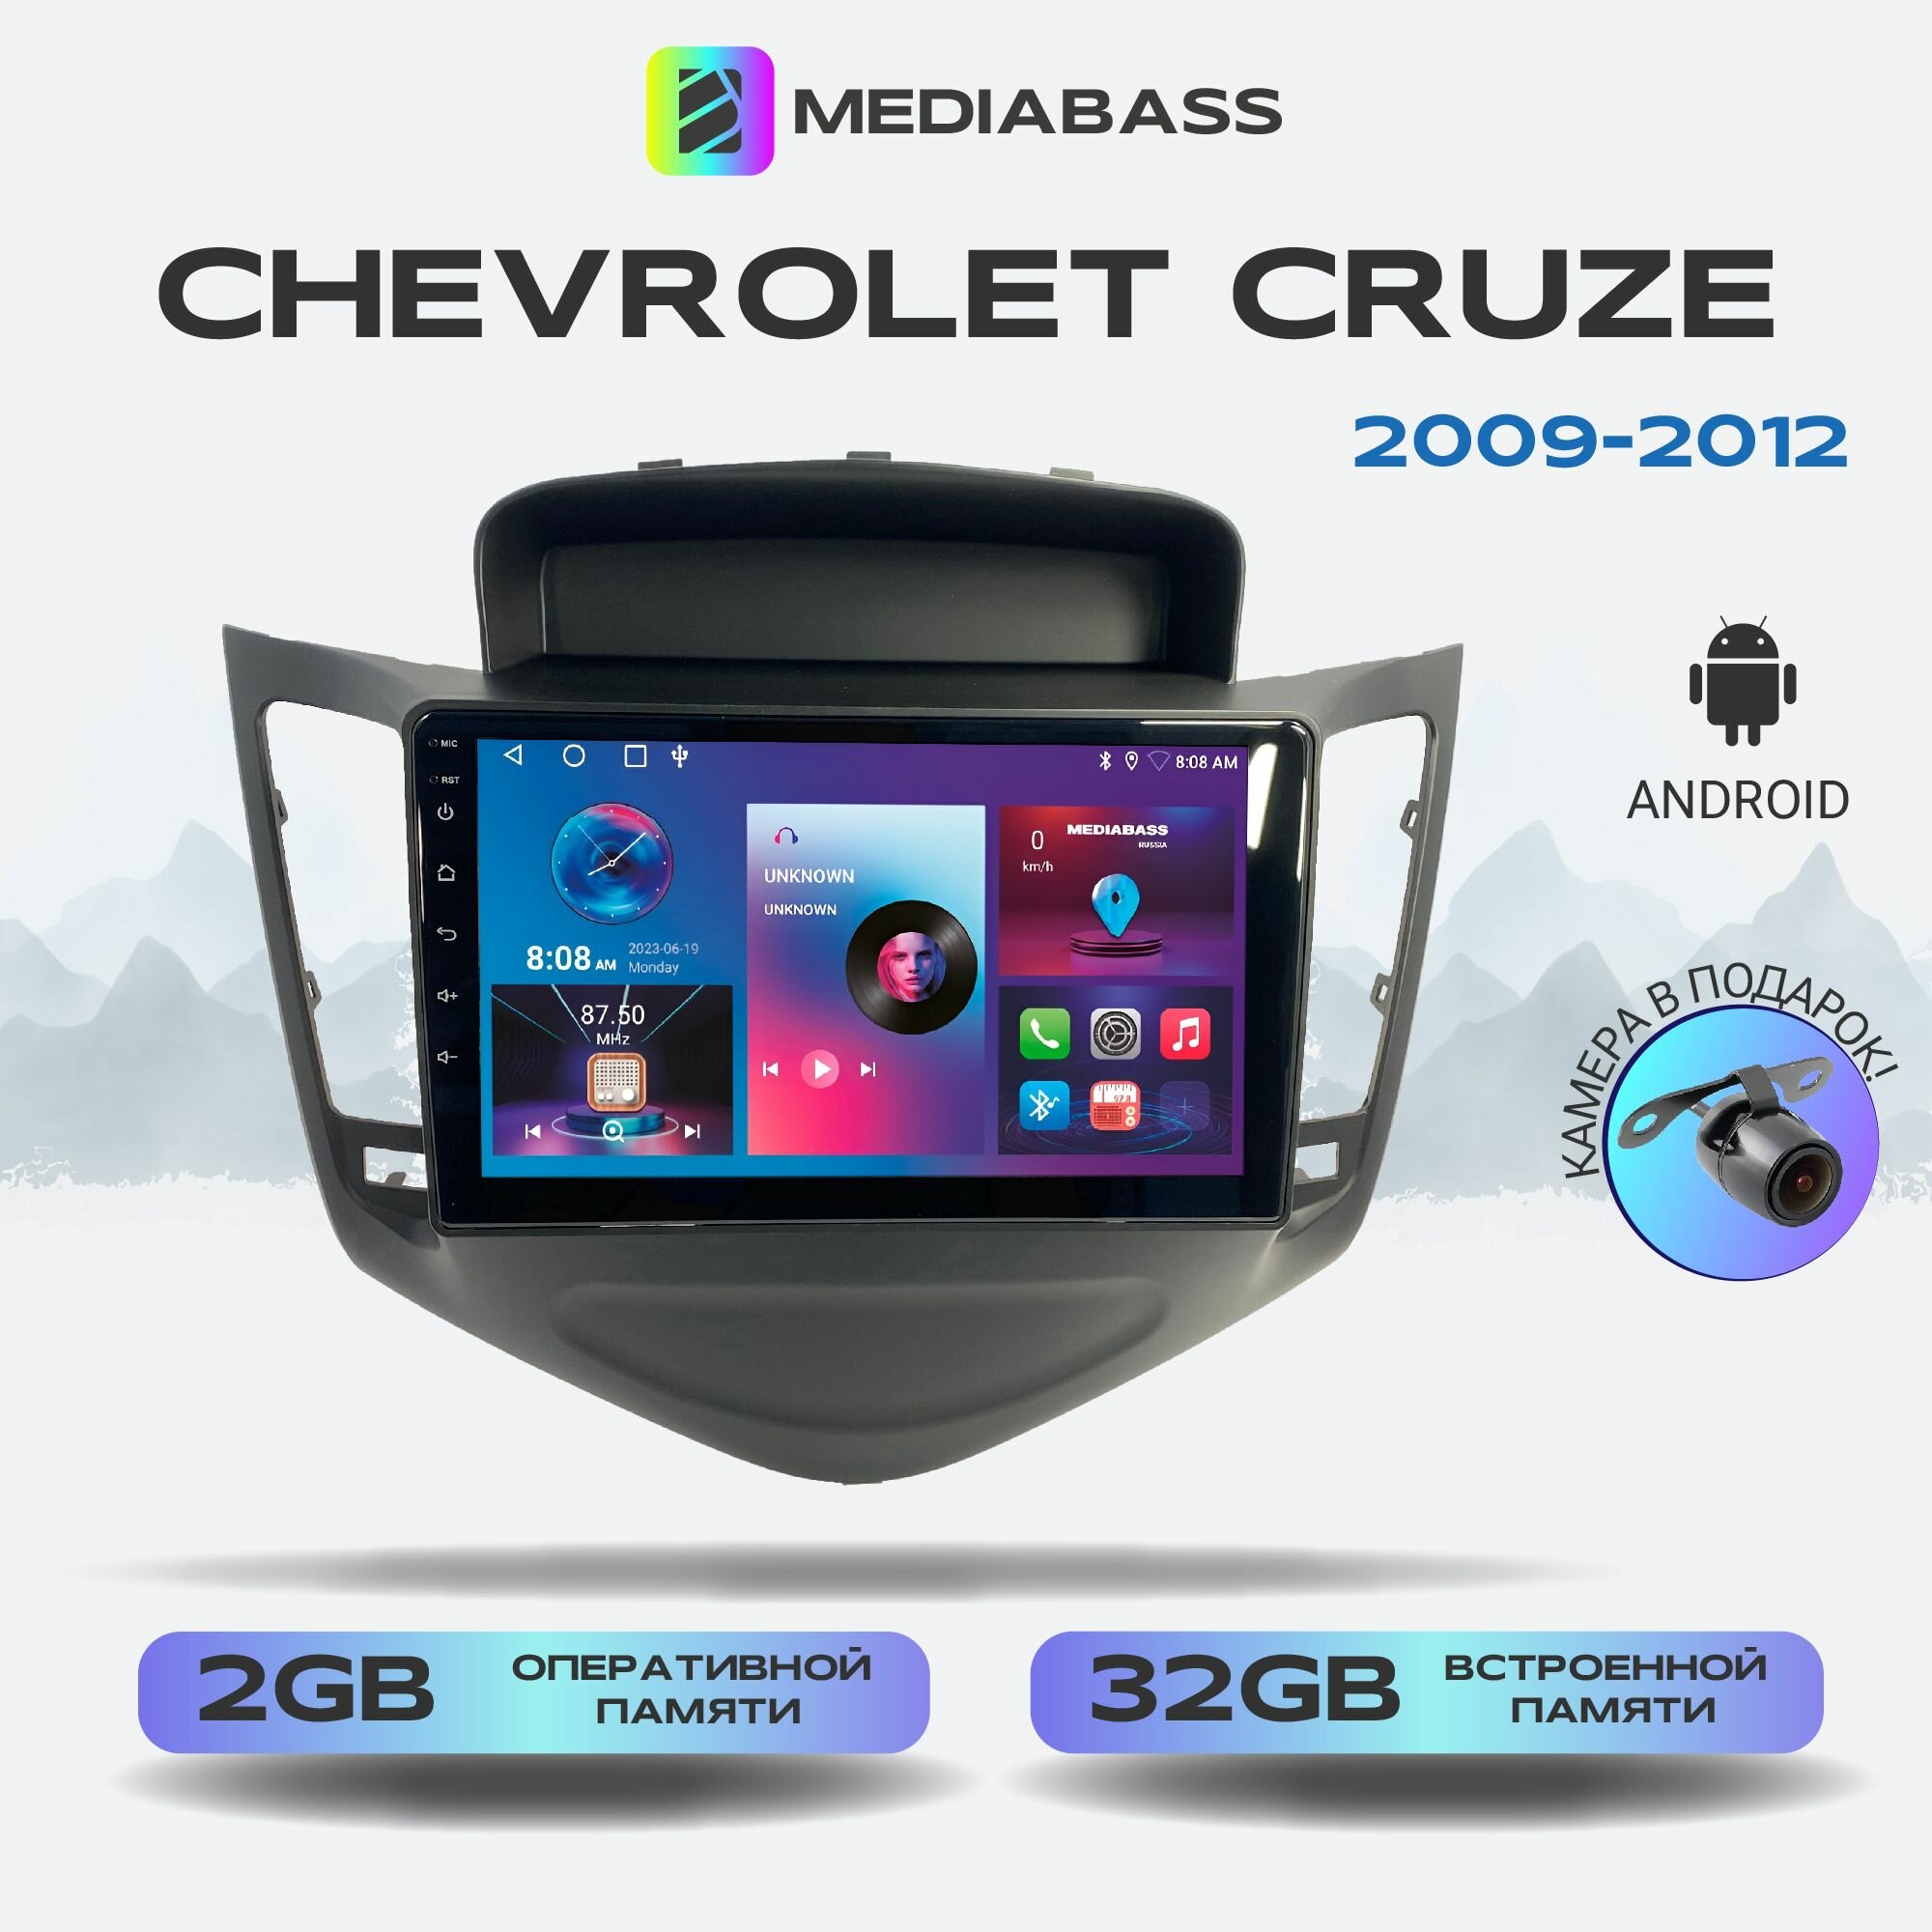 Автомагнитола Mediabass Chevrolet Cruze 2009-2012, 2/32ГБ, 4-ядерный процессор, QLED экран с разрешением 1280*720, чип-усилитель YD7388, Android 12 / Шевроле Круз